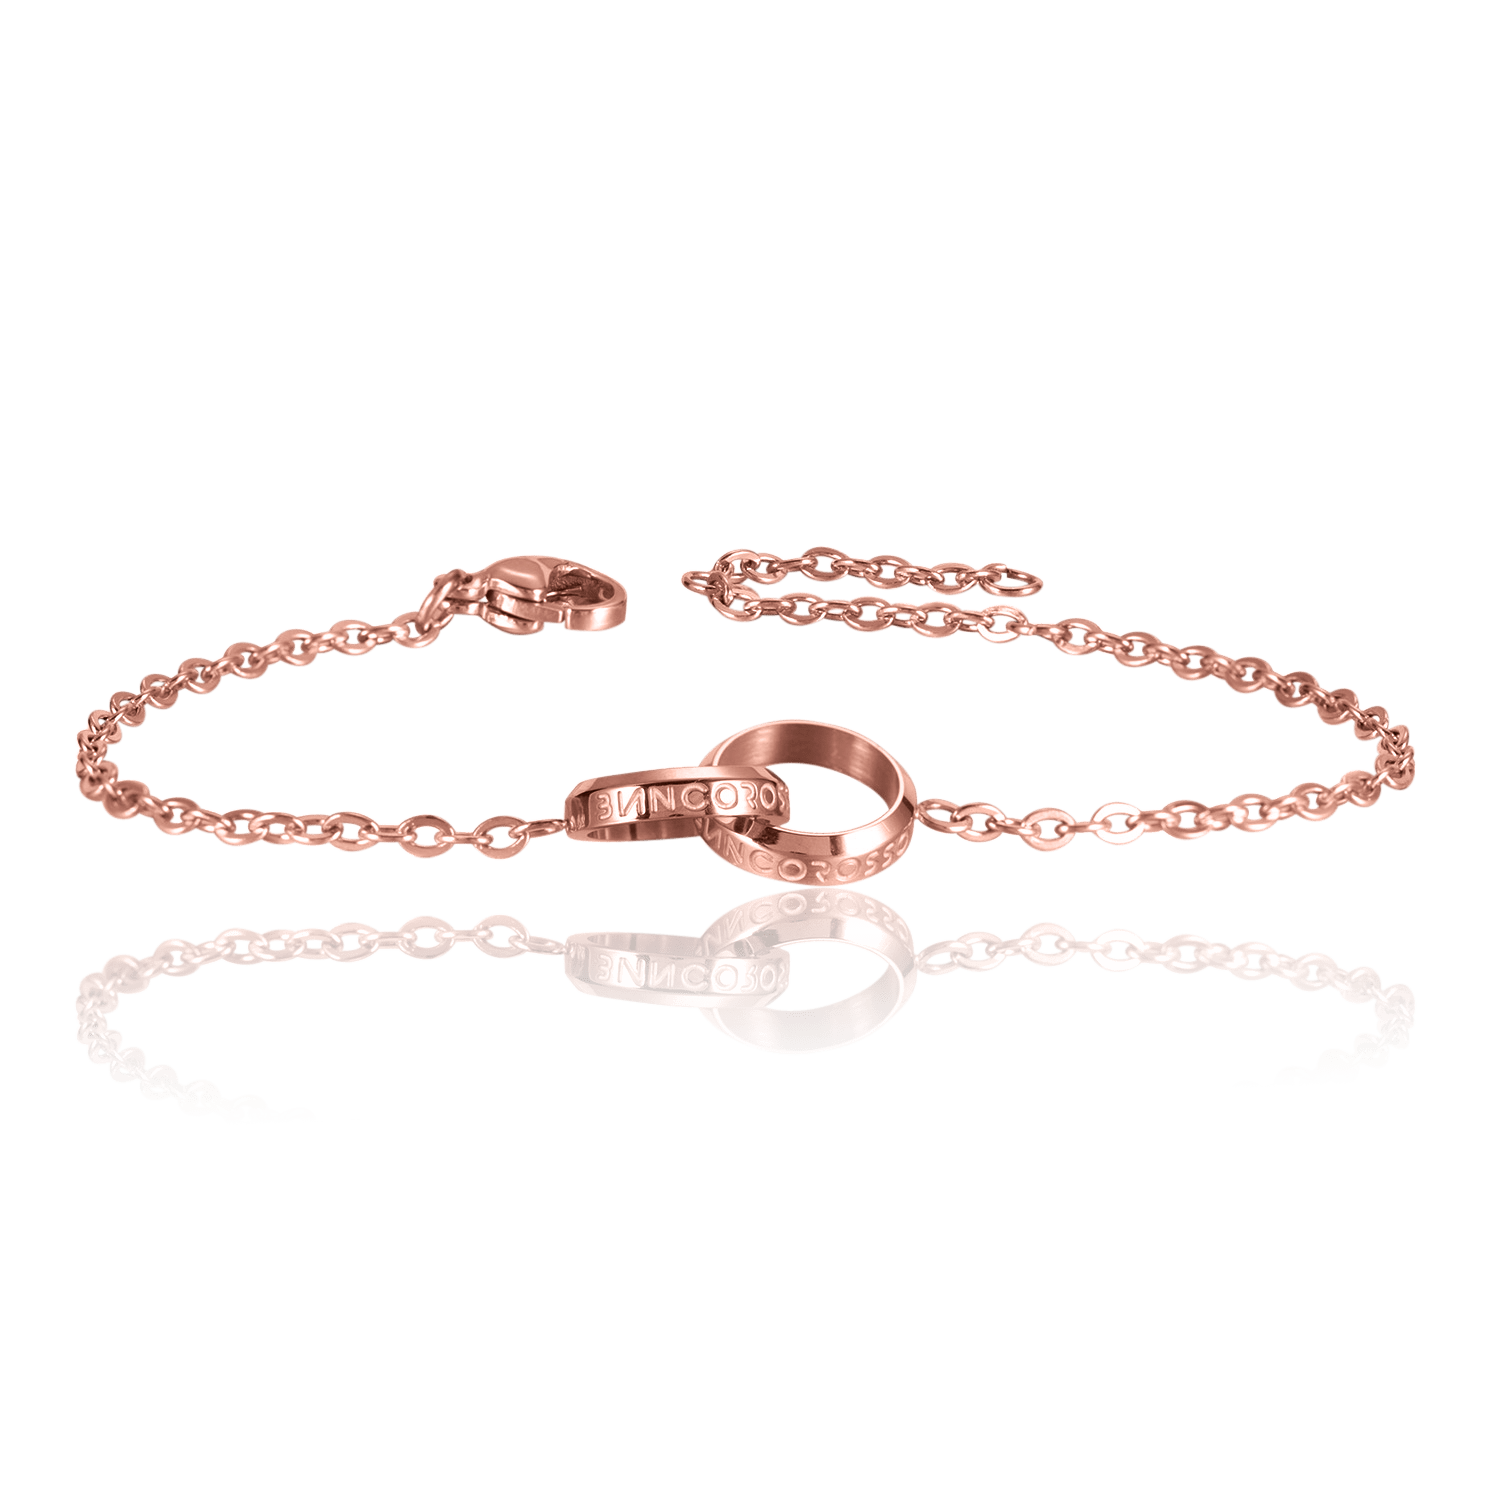 bianco rosso Bracelets To My Godmother - Eternity Bracelet cyprus greece jewelry gift free shipping europe worldwide